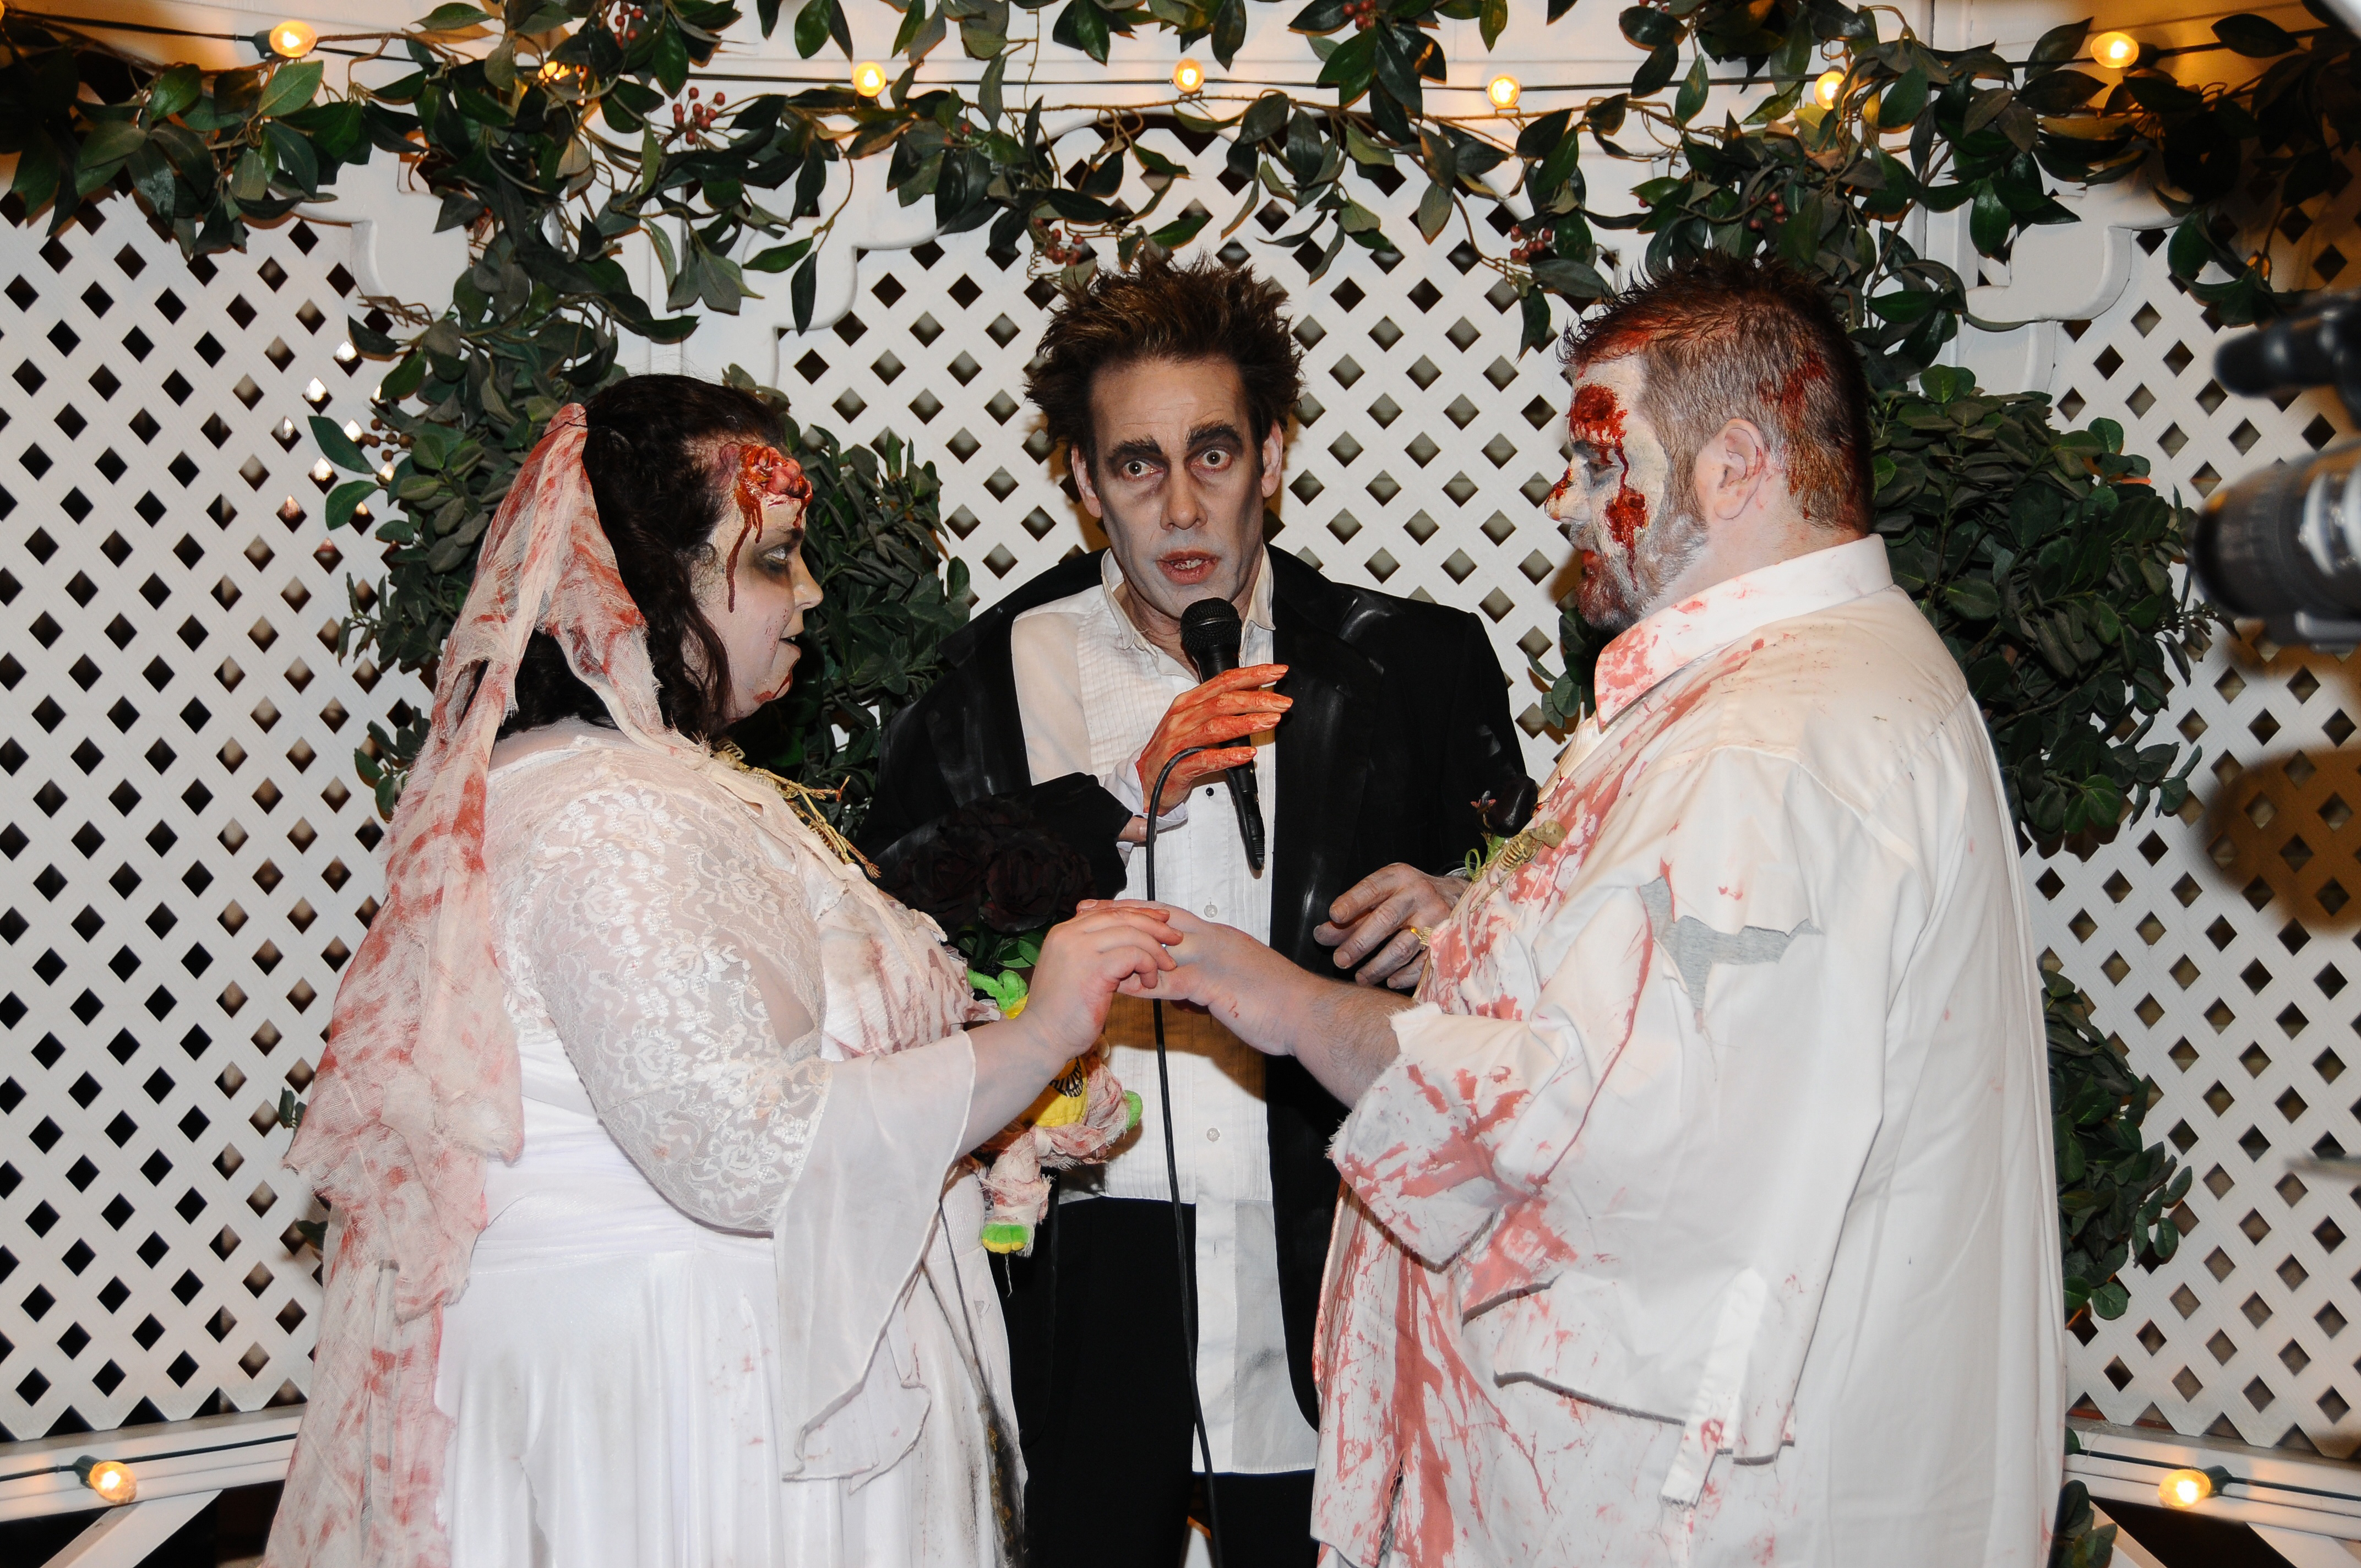 Zombie Wedding at Viva Las Vegas